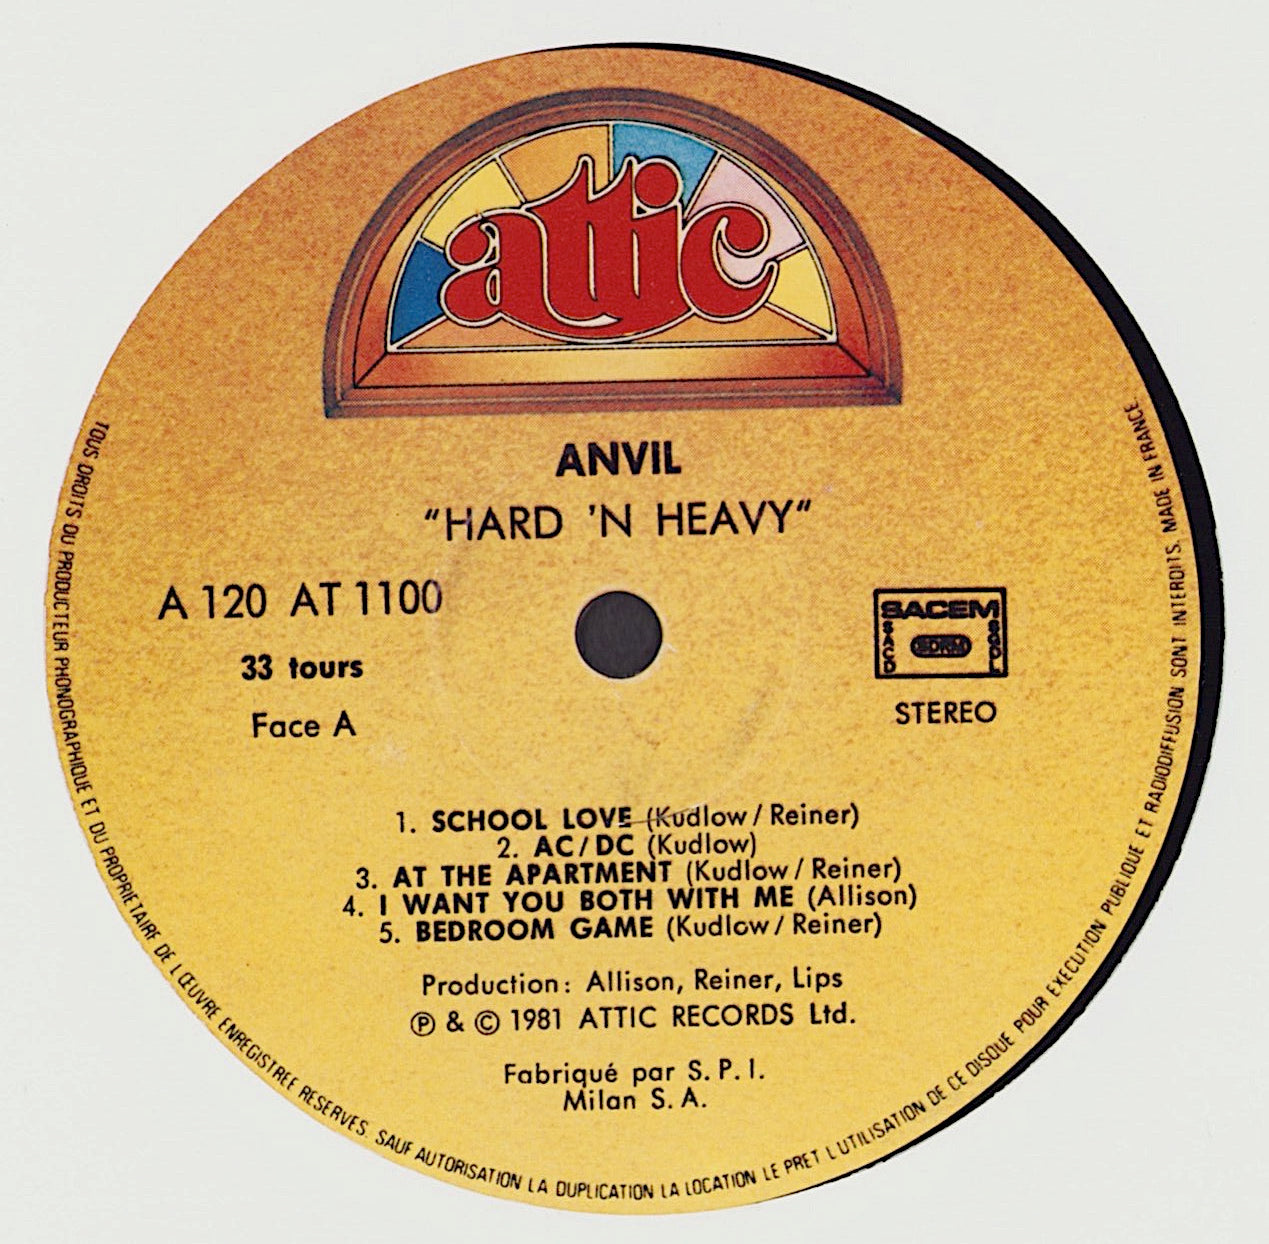 Anvil - Hard 'N' Heavy Vinyl LP